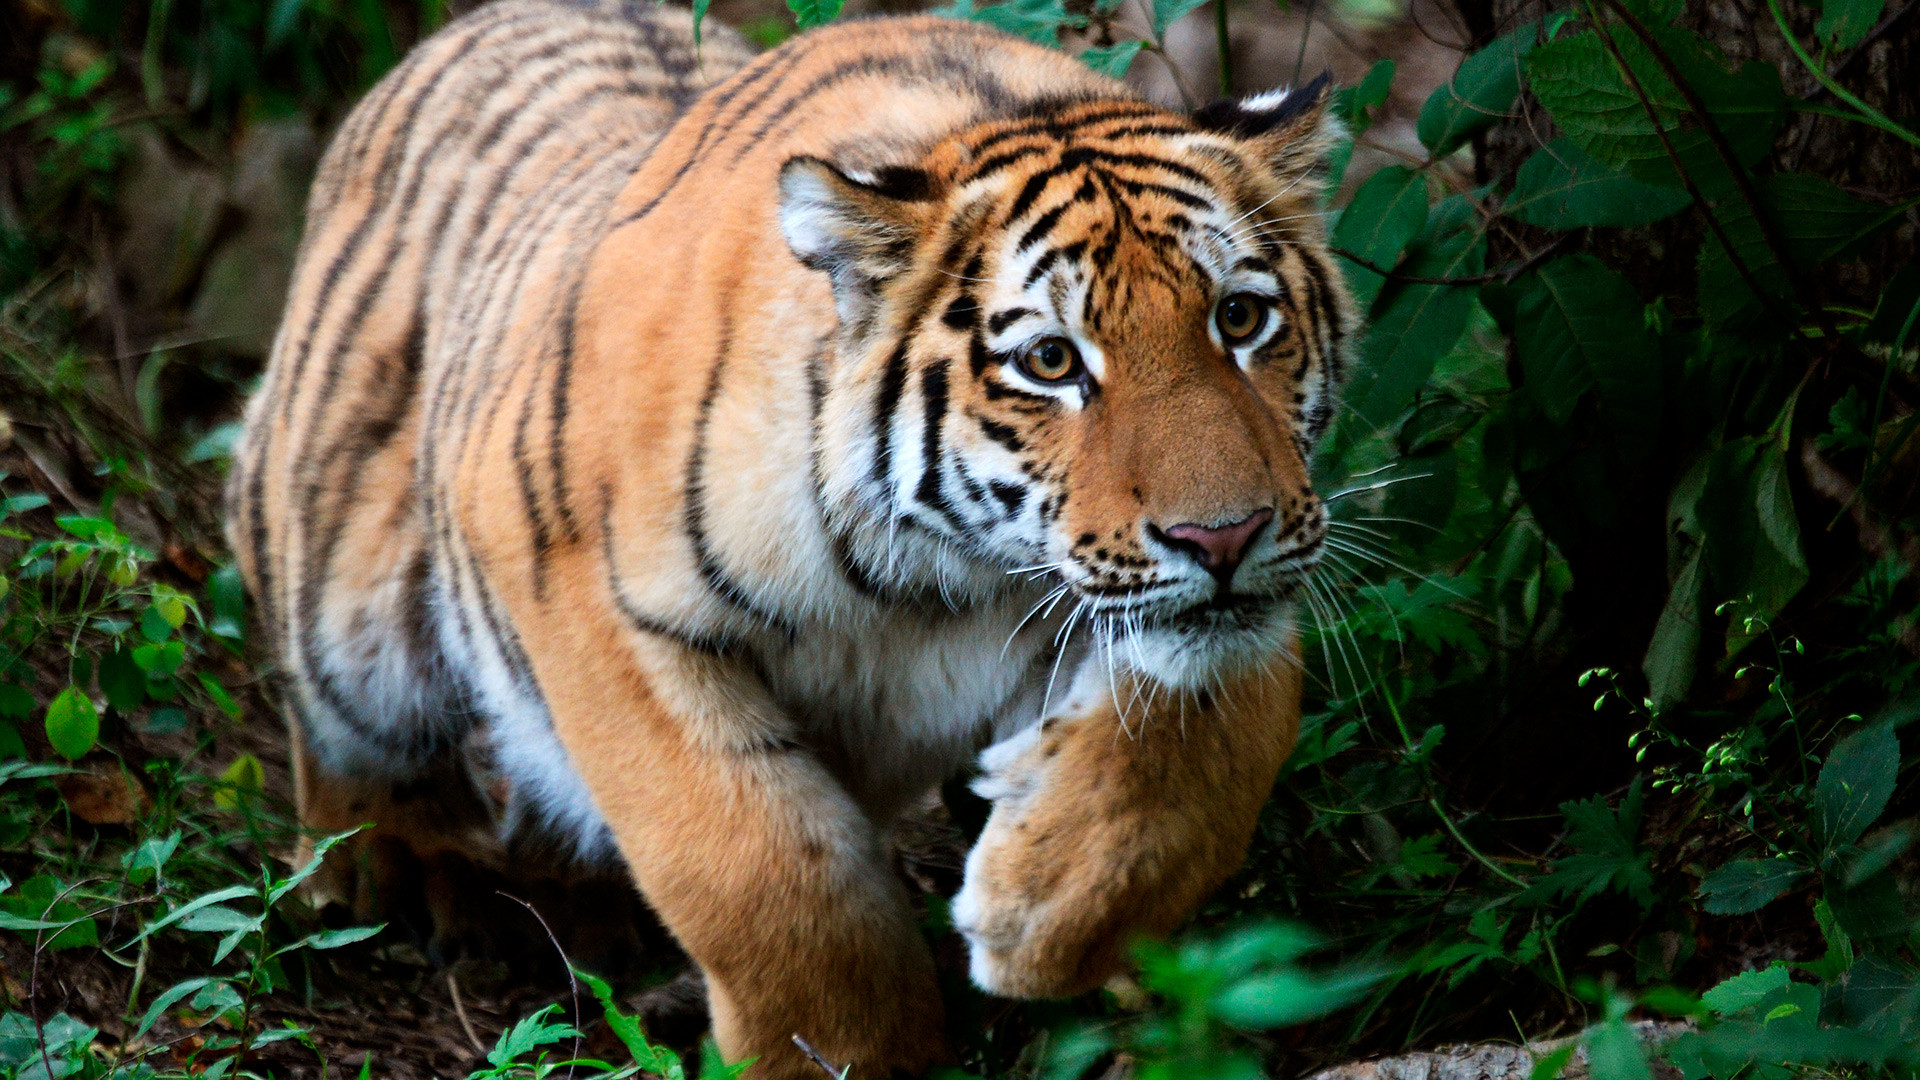 Tigar Šerhan star deset mjeseci. Mladunče čuvenog amurskog tigra Amura i tigrice Usuri. Primorski safari park.

